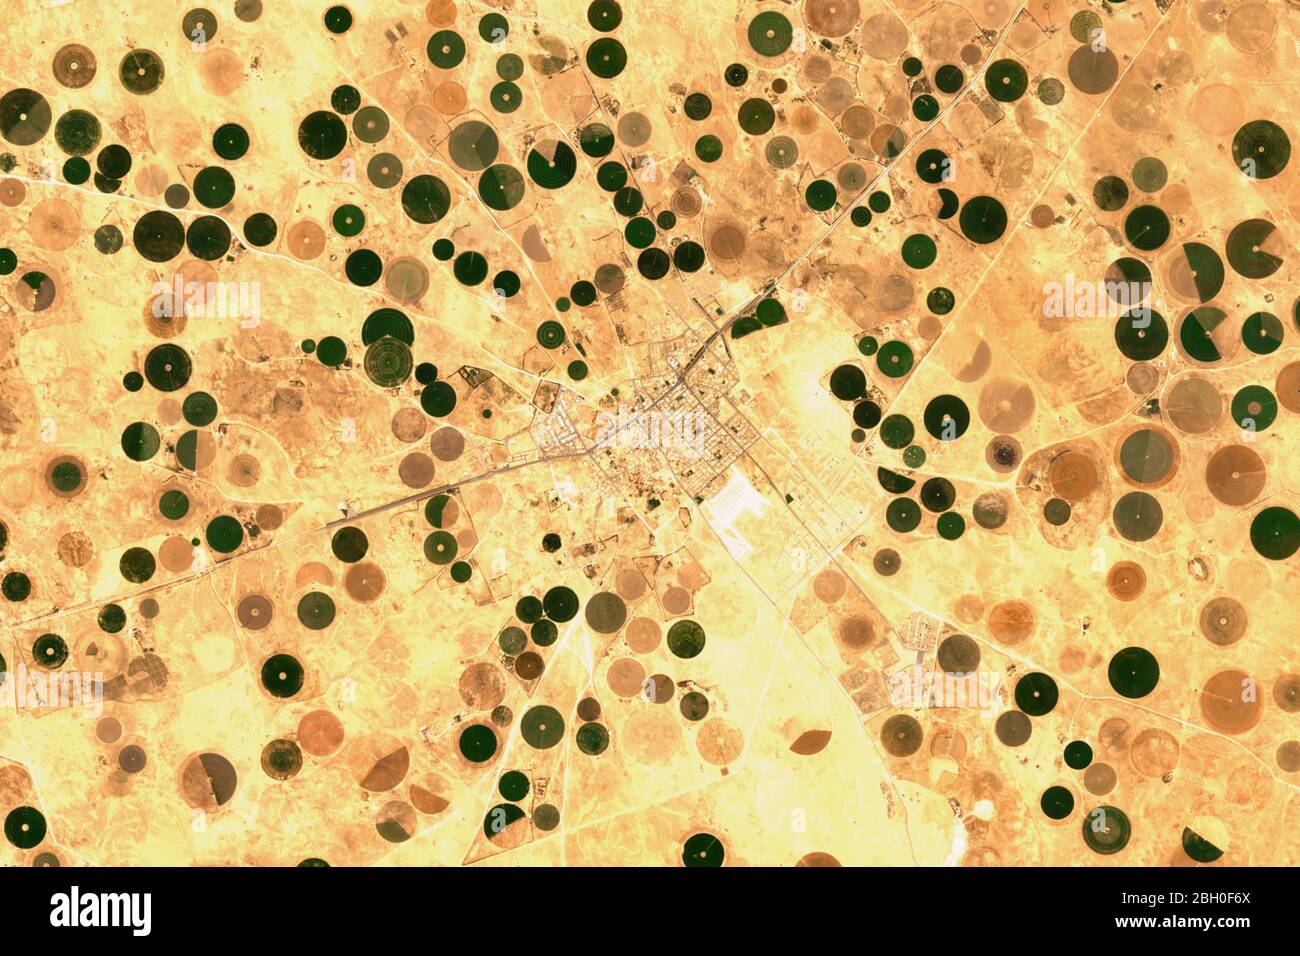 Hochauflösende Satellitenaufnahme von Bewässerungsanlagen in Qaryat al-Ulya, Saudi-Arabien - enthält modifizierte Copernicus-Sentinel-Daten (2020) Stockfoto